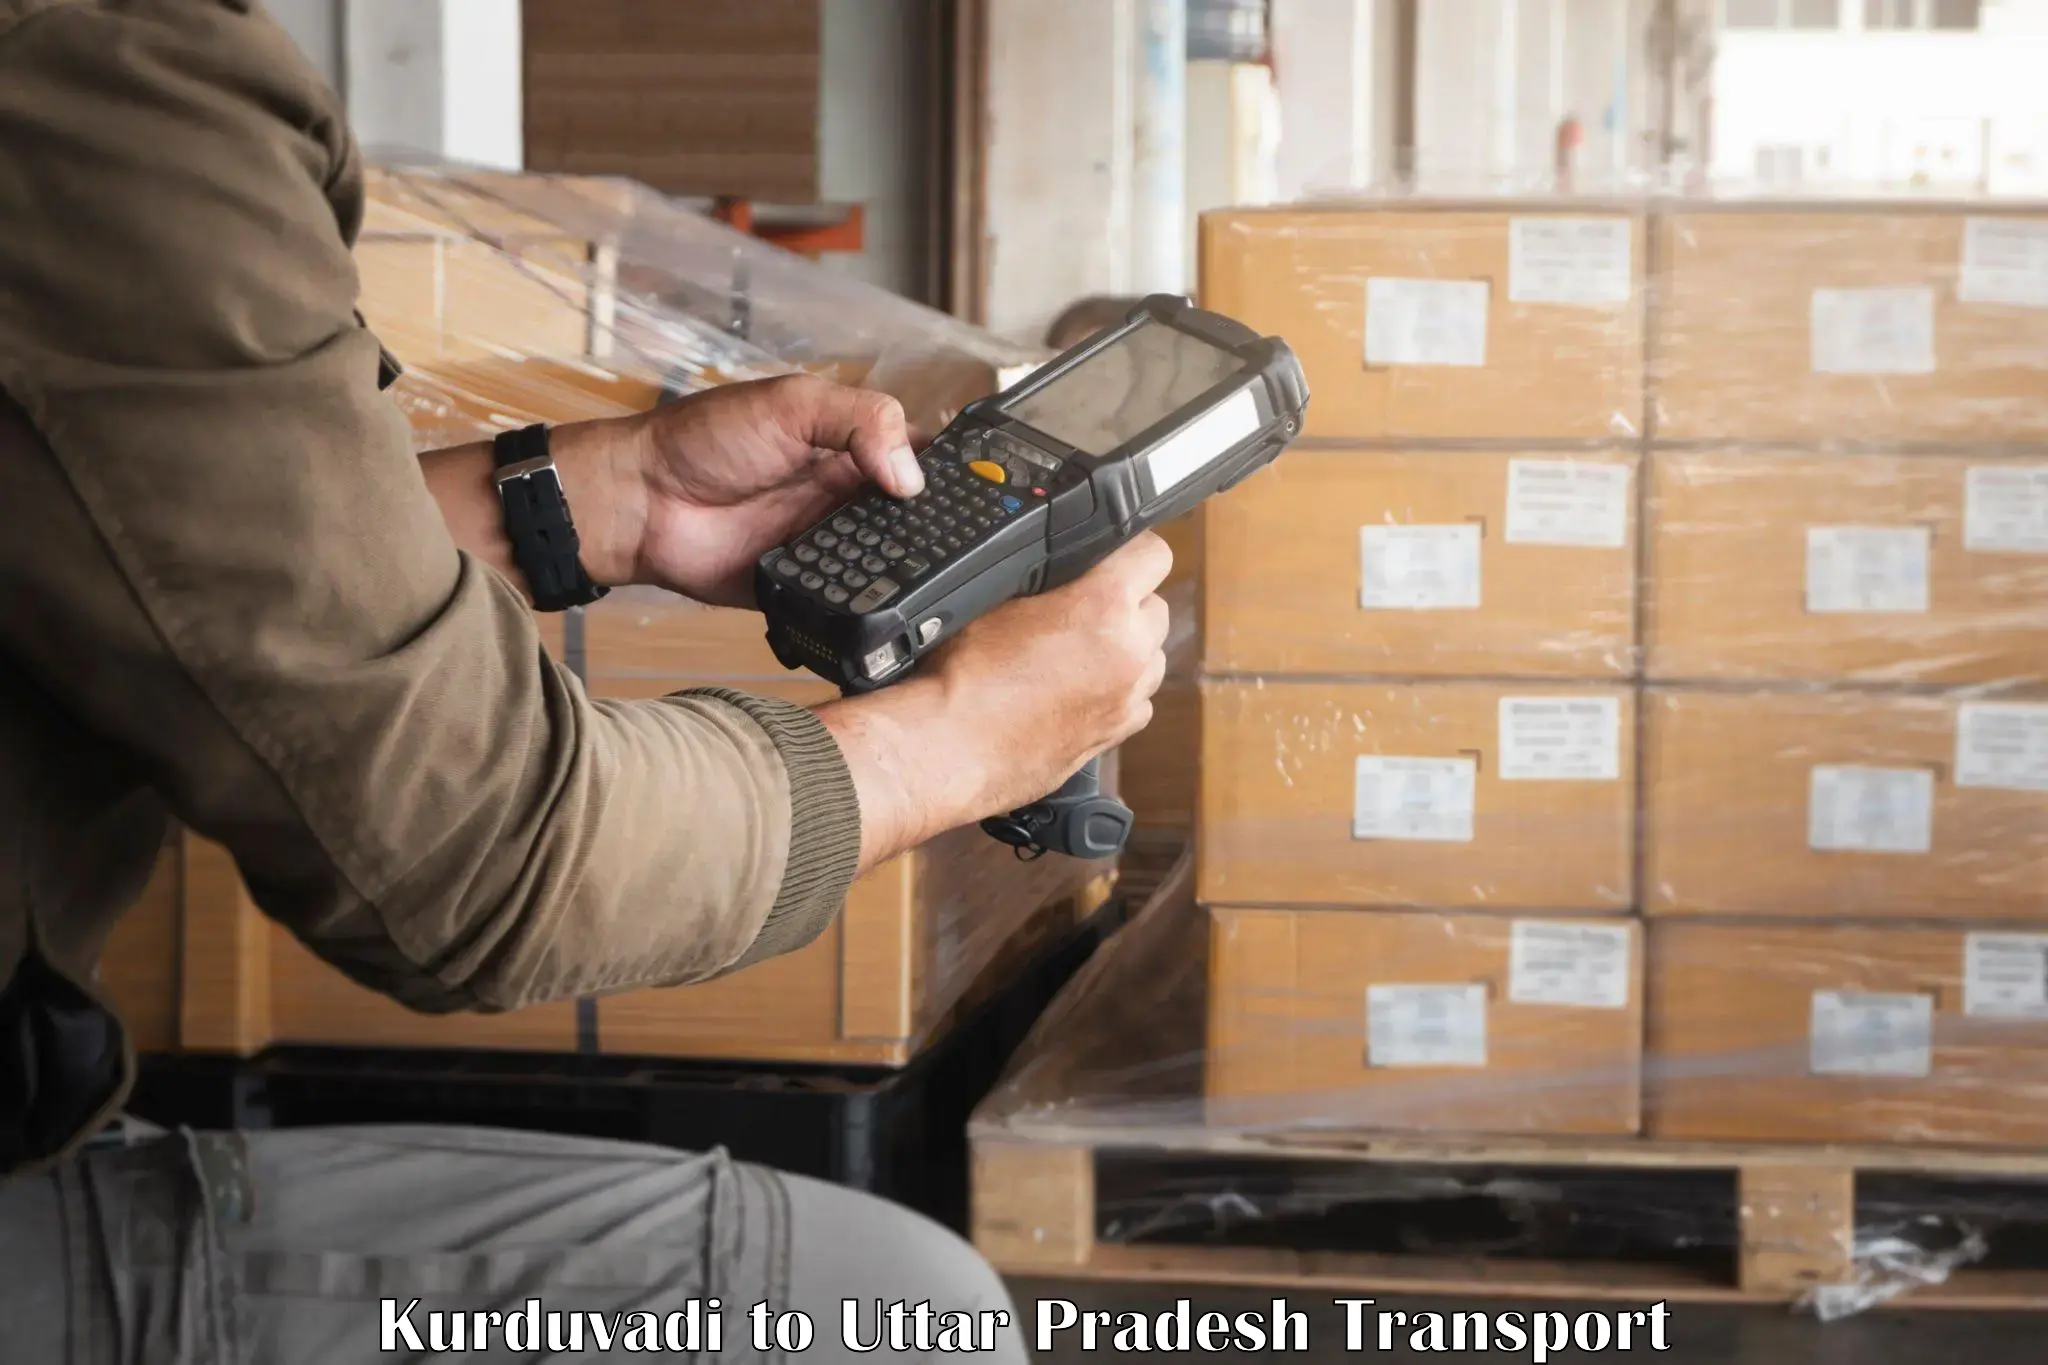 Furniture transport service Kurduvadi to Noida